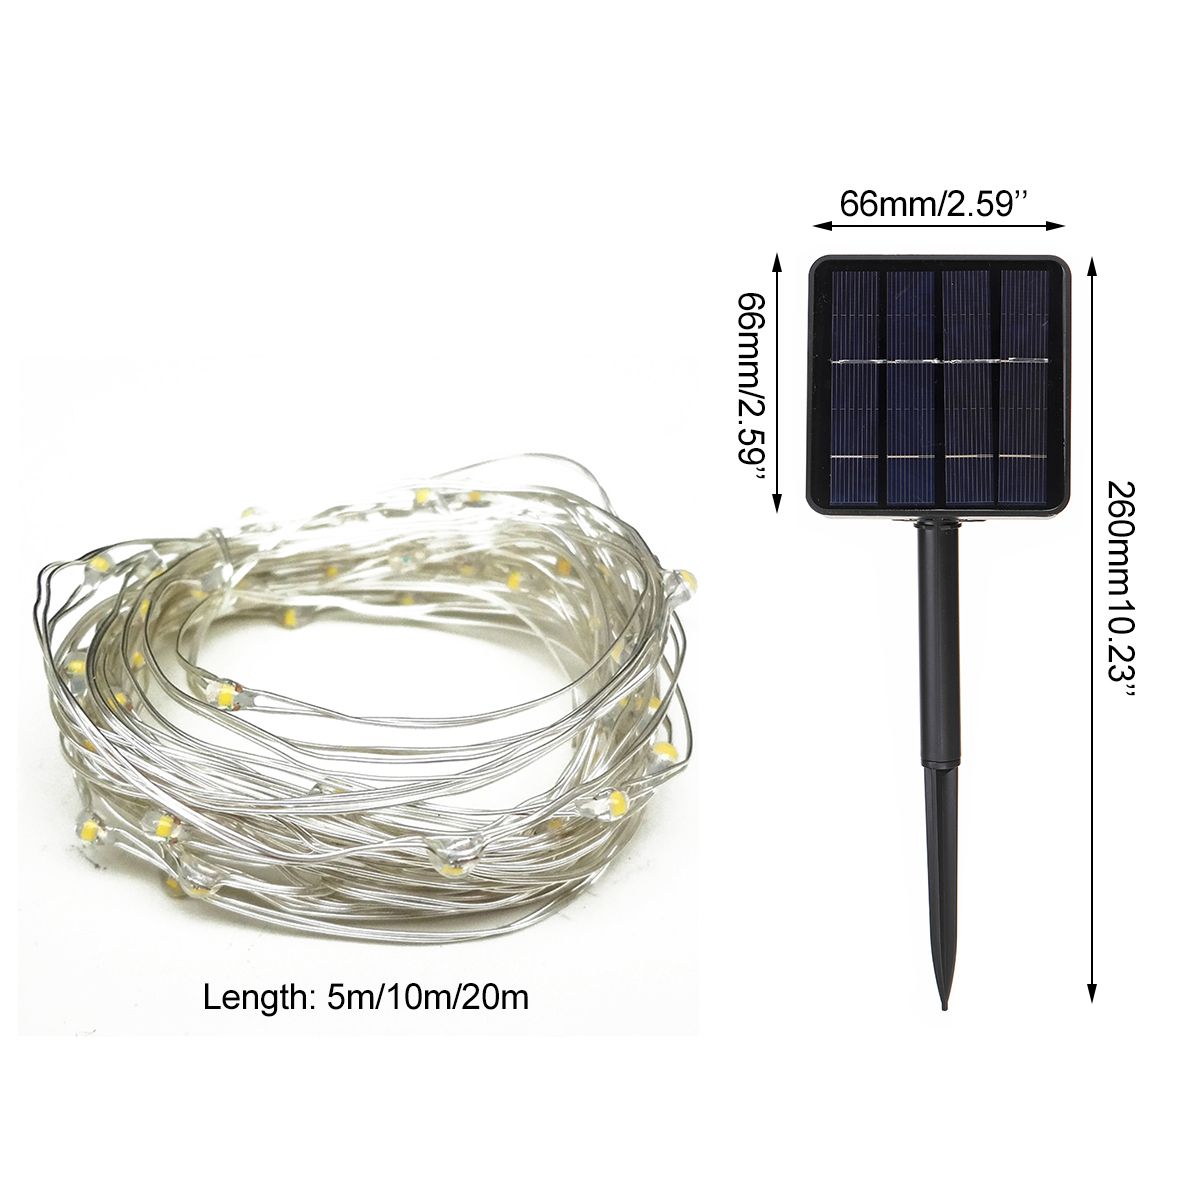 5M10M20M-LED-Solar-String-Light-8-Modes-White-Rope-Wire-Christmas-Lamp-for-Outdoor-Garden-Home-Festi-1740523